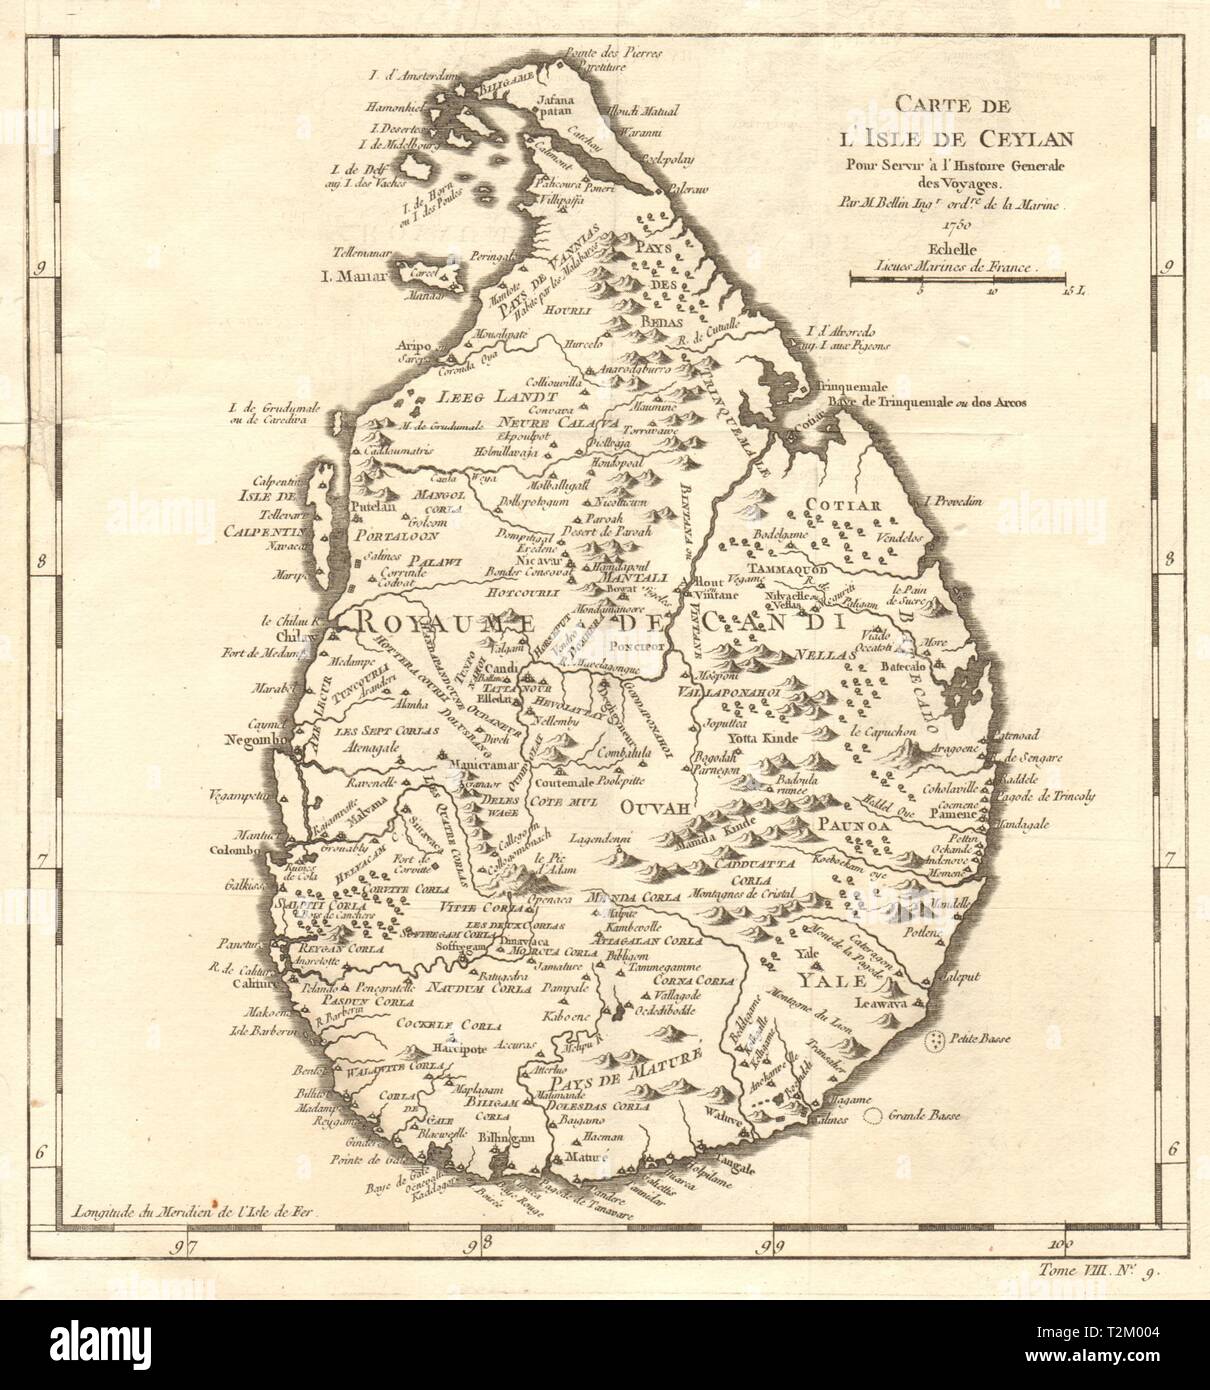 'Carte de l’lsle de Ceylan'. Sri Lanka. Island of Ceylon. BELLIN 1750 old map Stock Photo